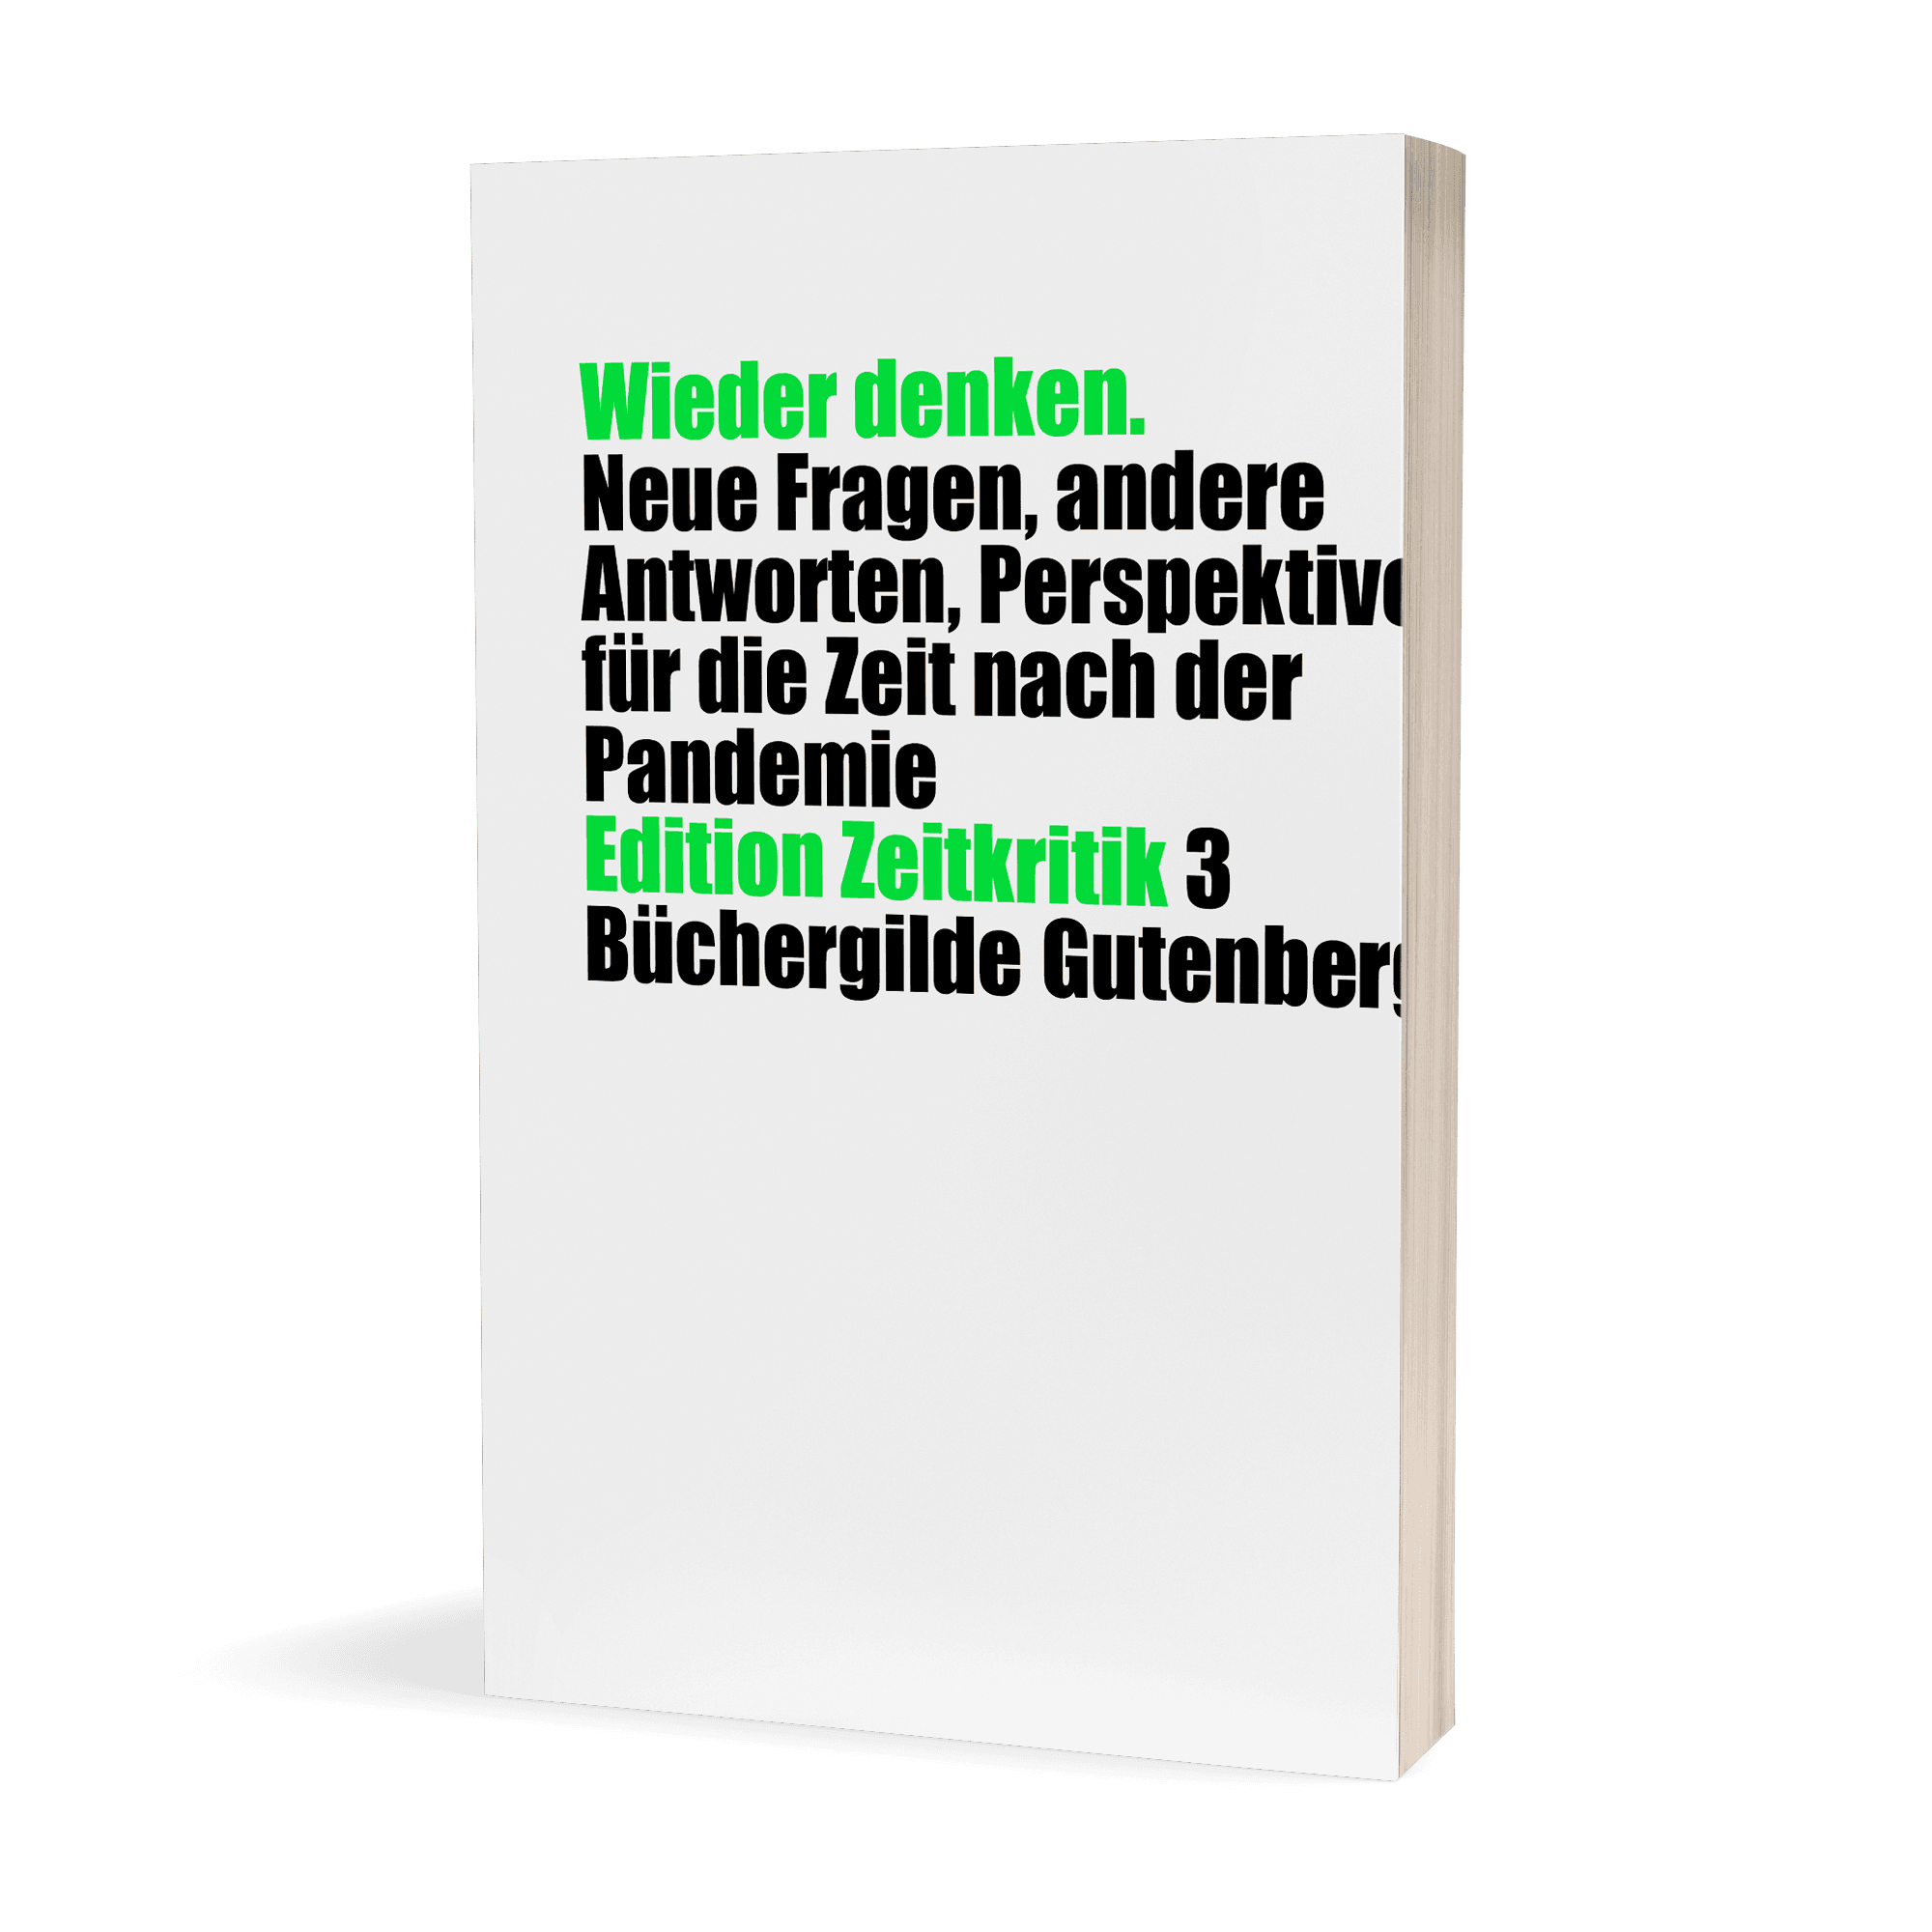 171902_EZ3_Hilzensauer_Denken_3D_01.png